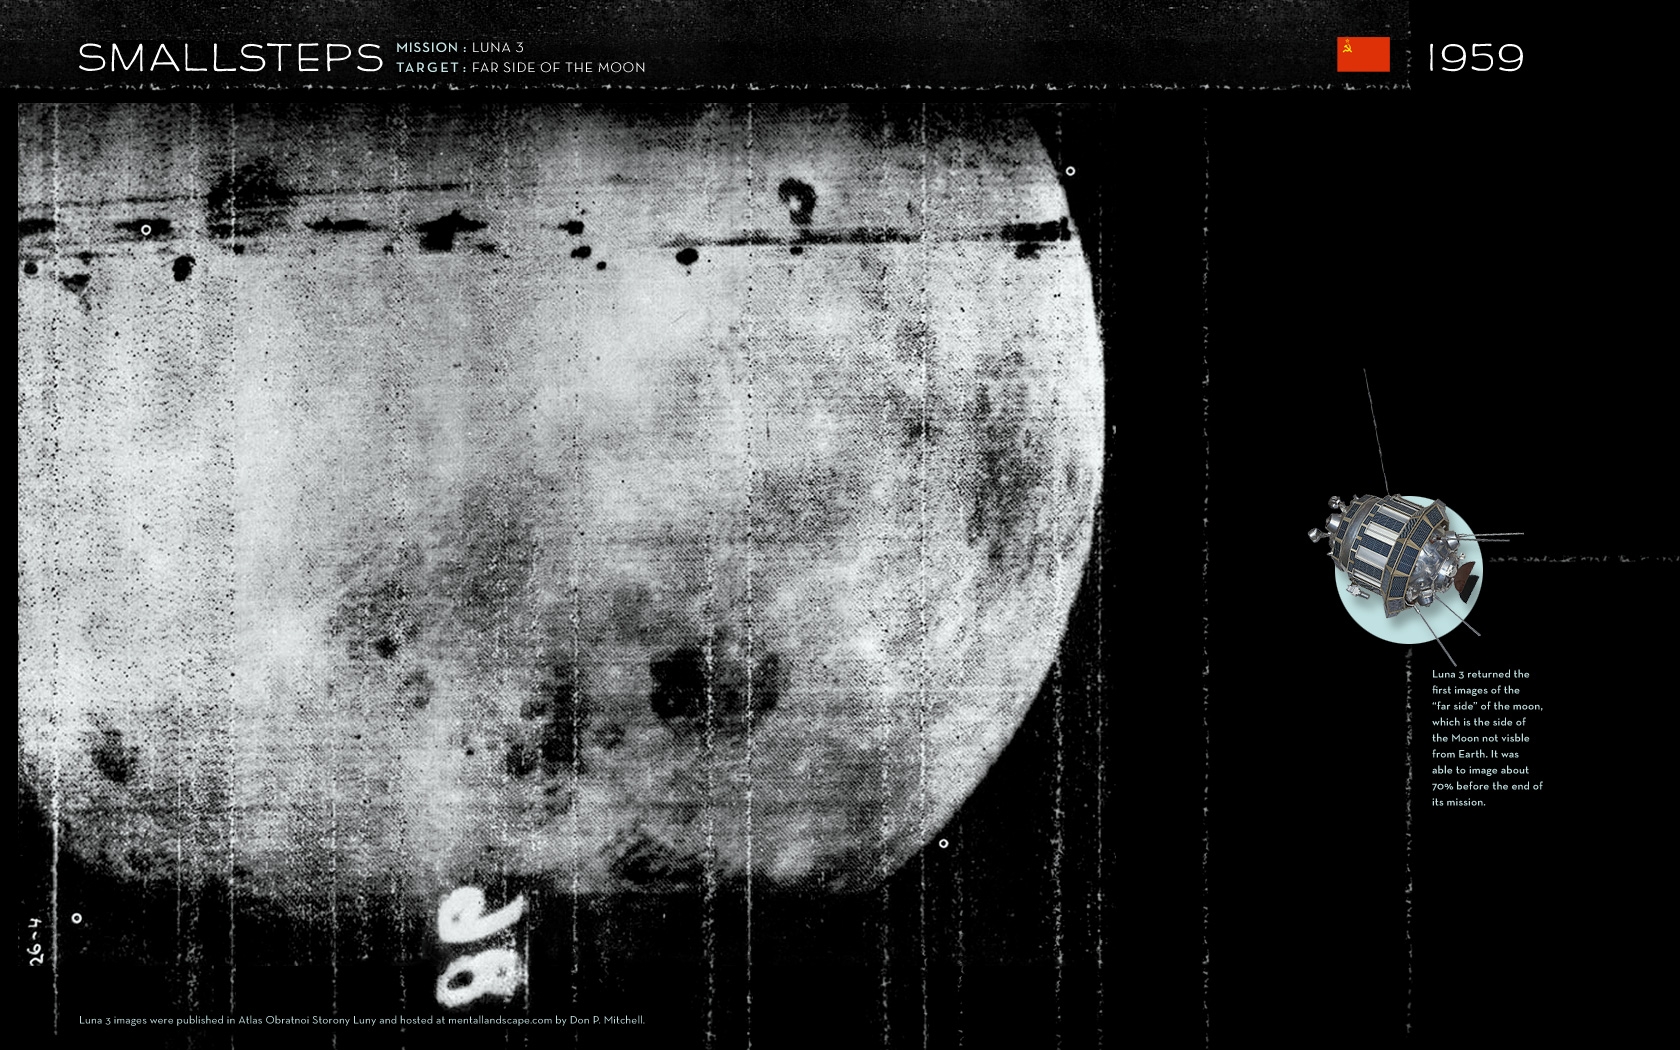 Первые снимки обратной стороны луны. Луна-3 автоматическая межпланетная станция. Снимки автоматической станции "Луна 3". Луна 3 Фотографирование обратной стороны Луны. Луна 3 1959.